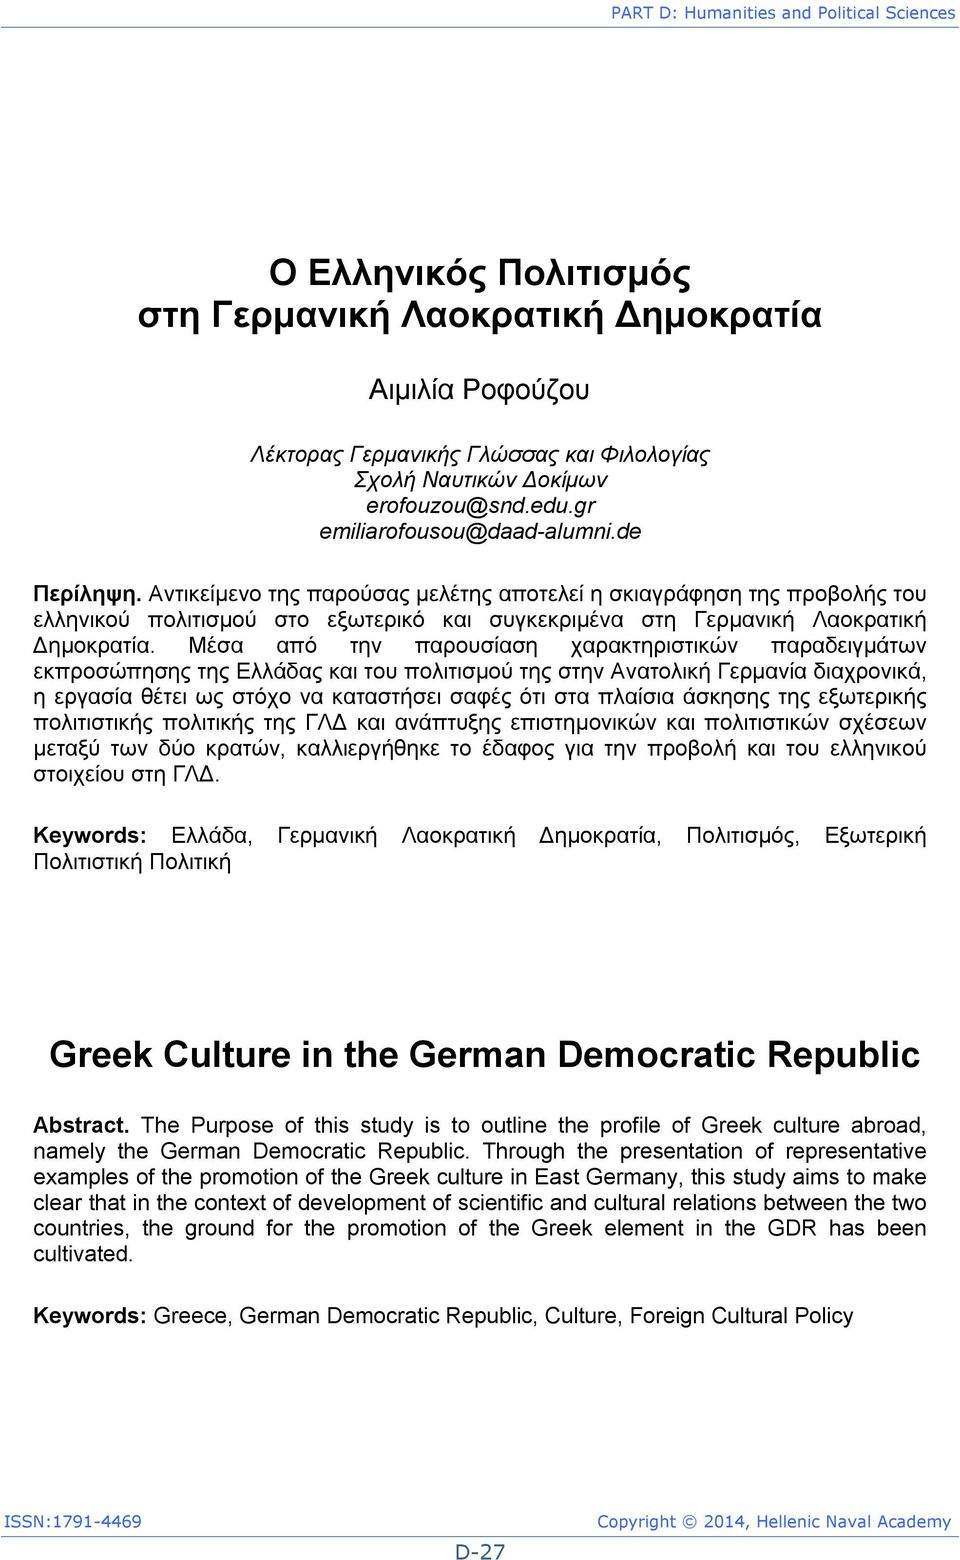 Αντικείμενο της παρούσας μελέτης αποτελεί η σκιαγράφηση της προβολής του ελληνικού πολιτισμού στο εξωτερικό και συγκεκριμένα στη Γερμανική Λαοκρατική Δημοκρατία.